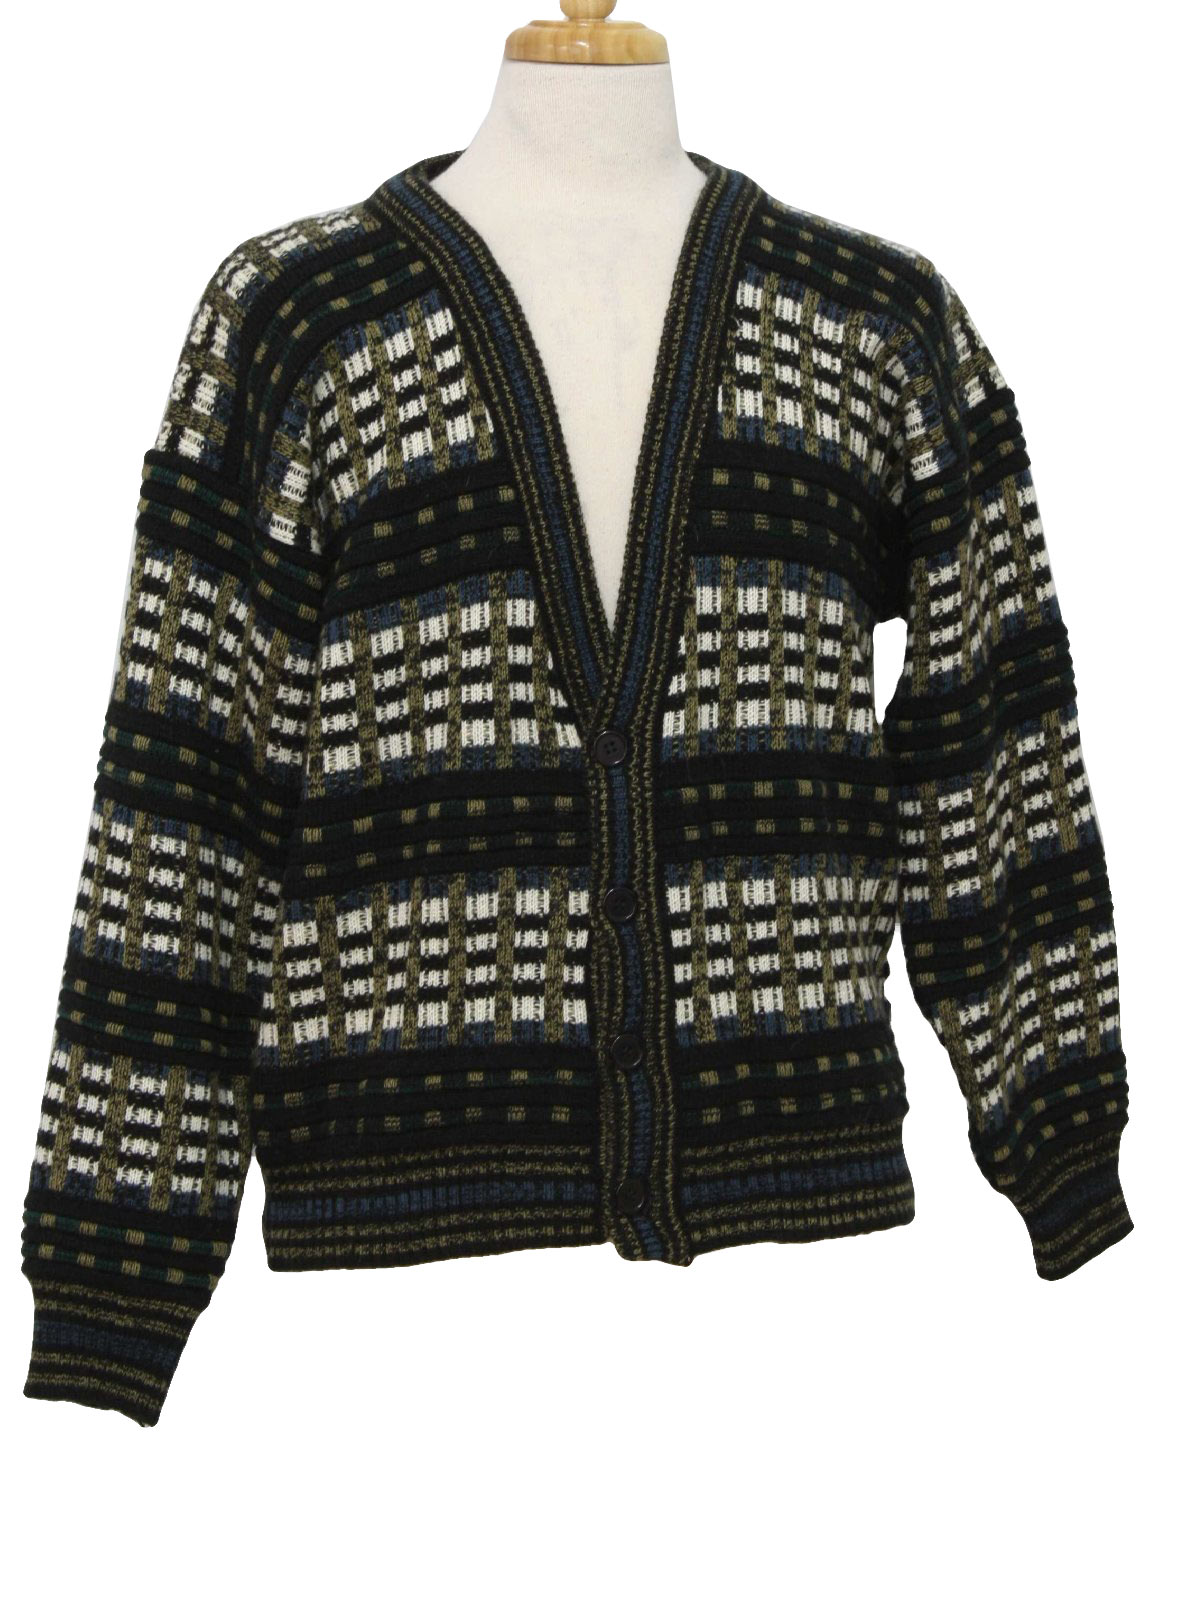 Vintage Knightsbridge Eighties Caridgan Sweater: 80s -Knightsbridge ...